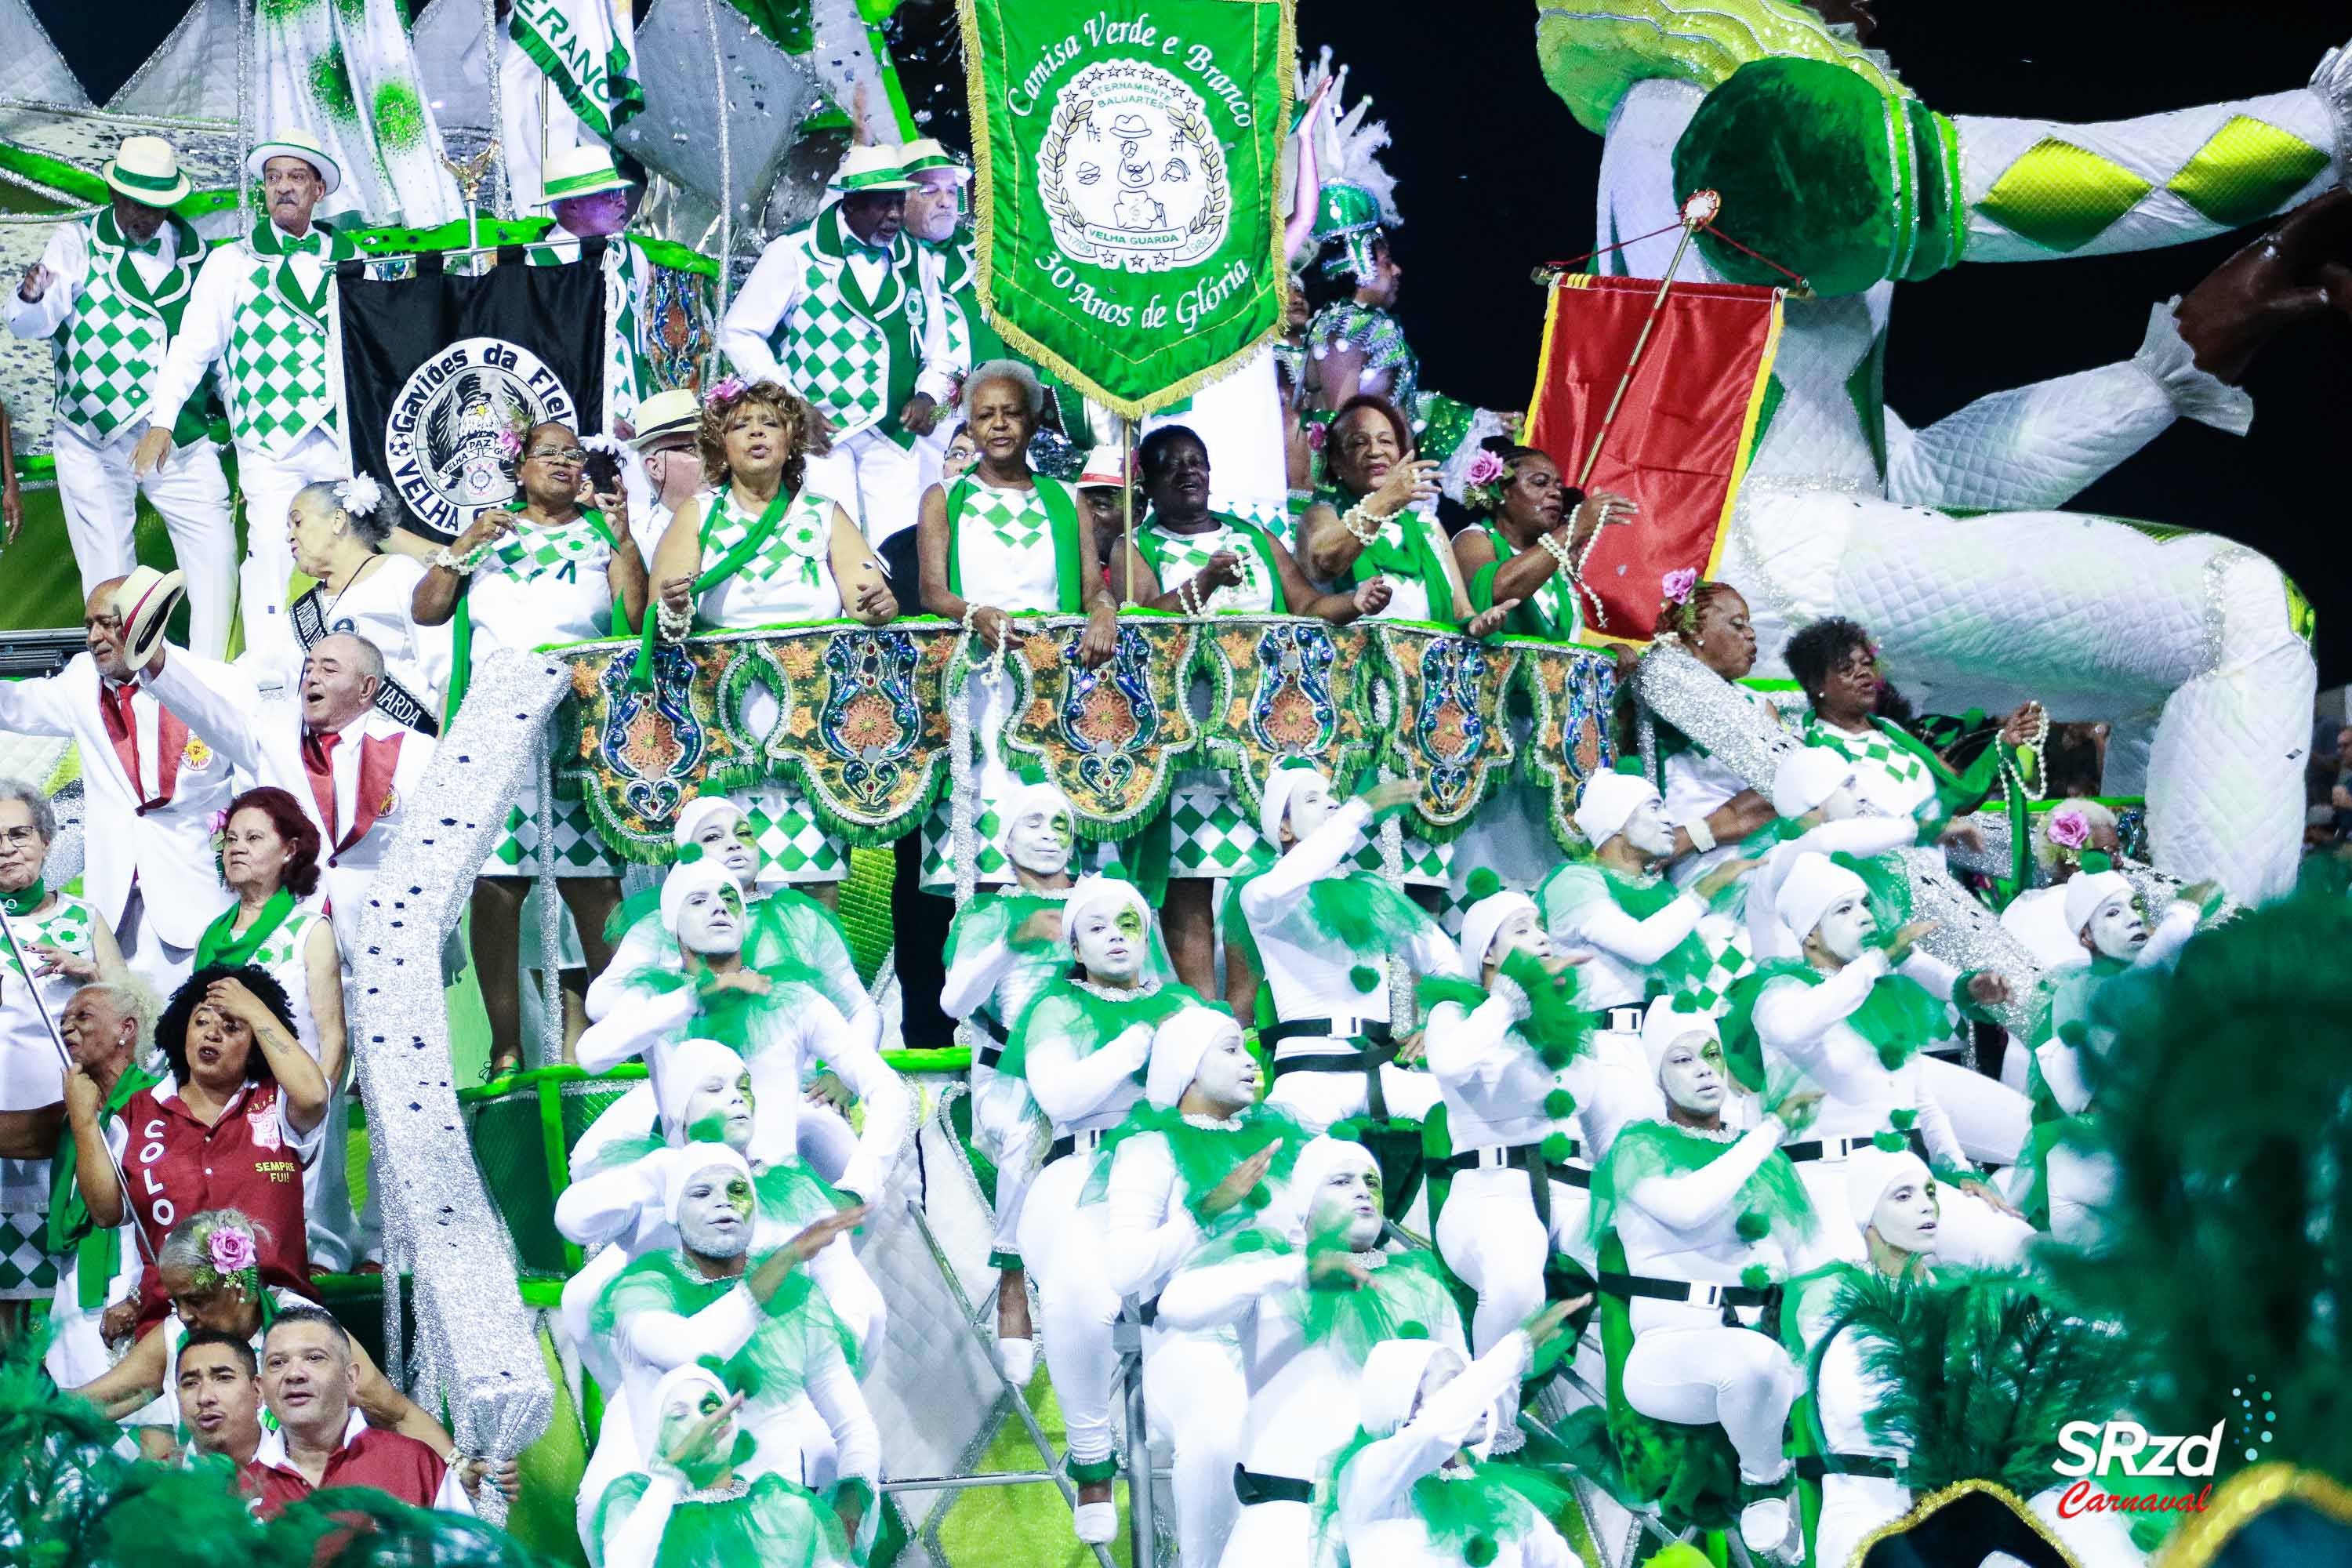 Camisa Verde e Branco apresenta time para o Carnaval 2023 em macarronada